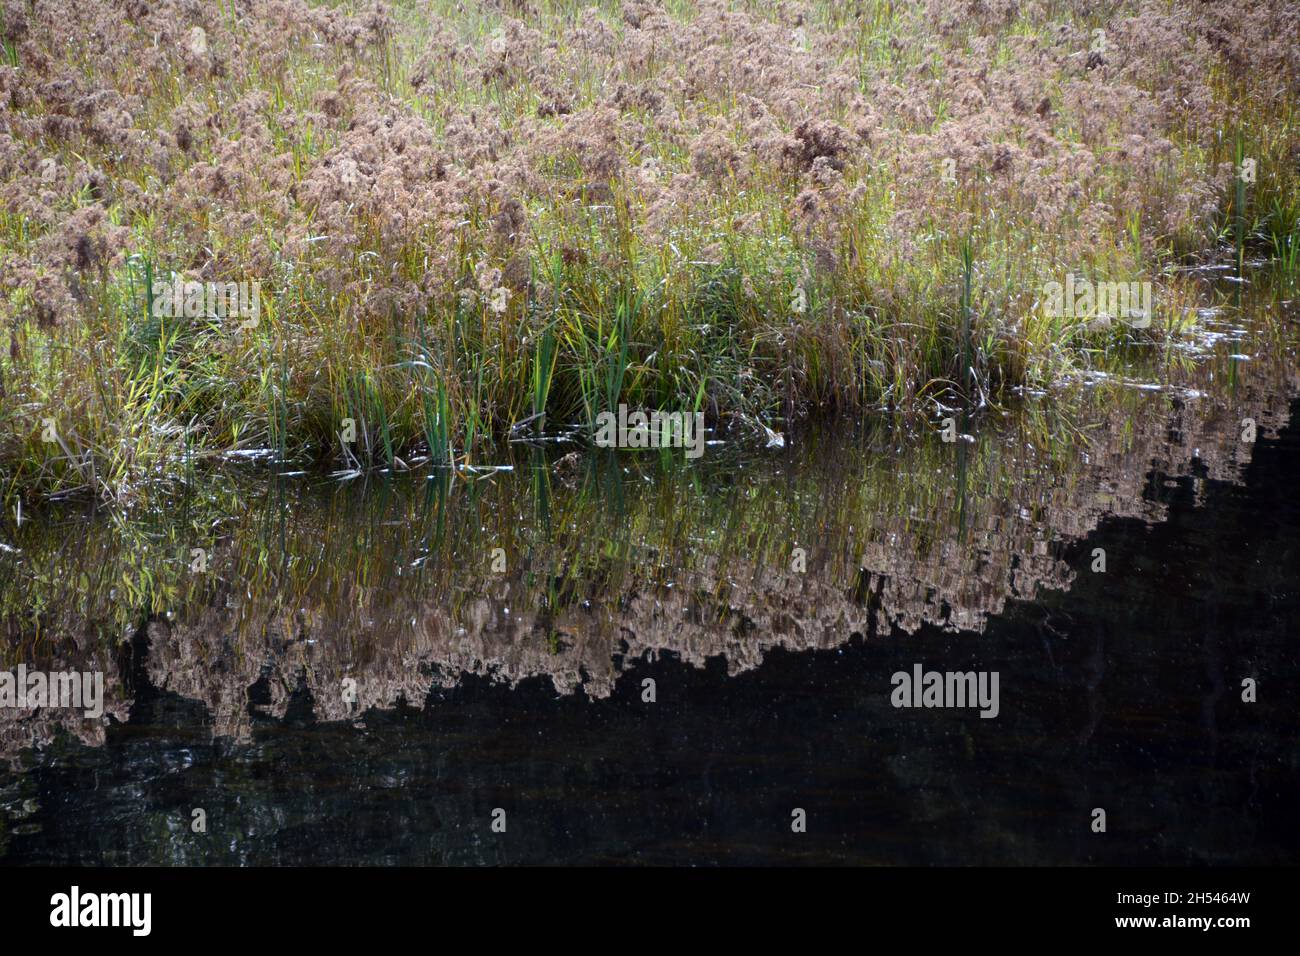 Gräser und Pflanzen im Pitt-Addington Marsh, einem ökologischen Schutzgebiet und Vogelschutzgebiet, in der Nähe von Pitt Meadows, British Columbia, Kanada. Stockfoto